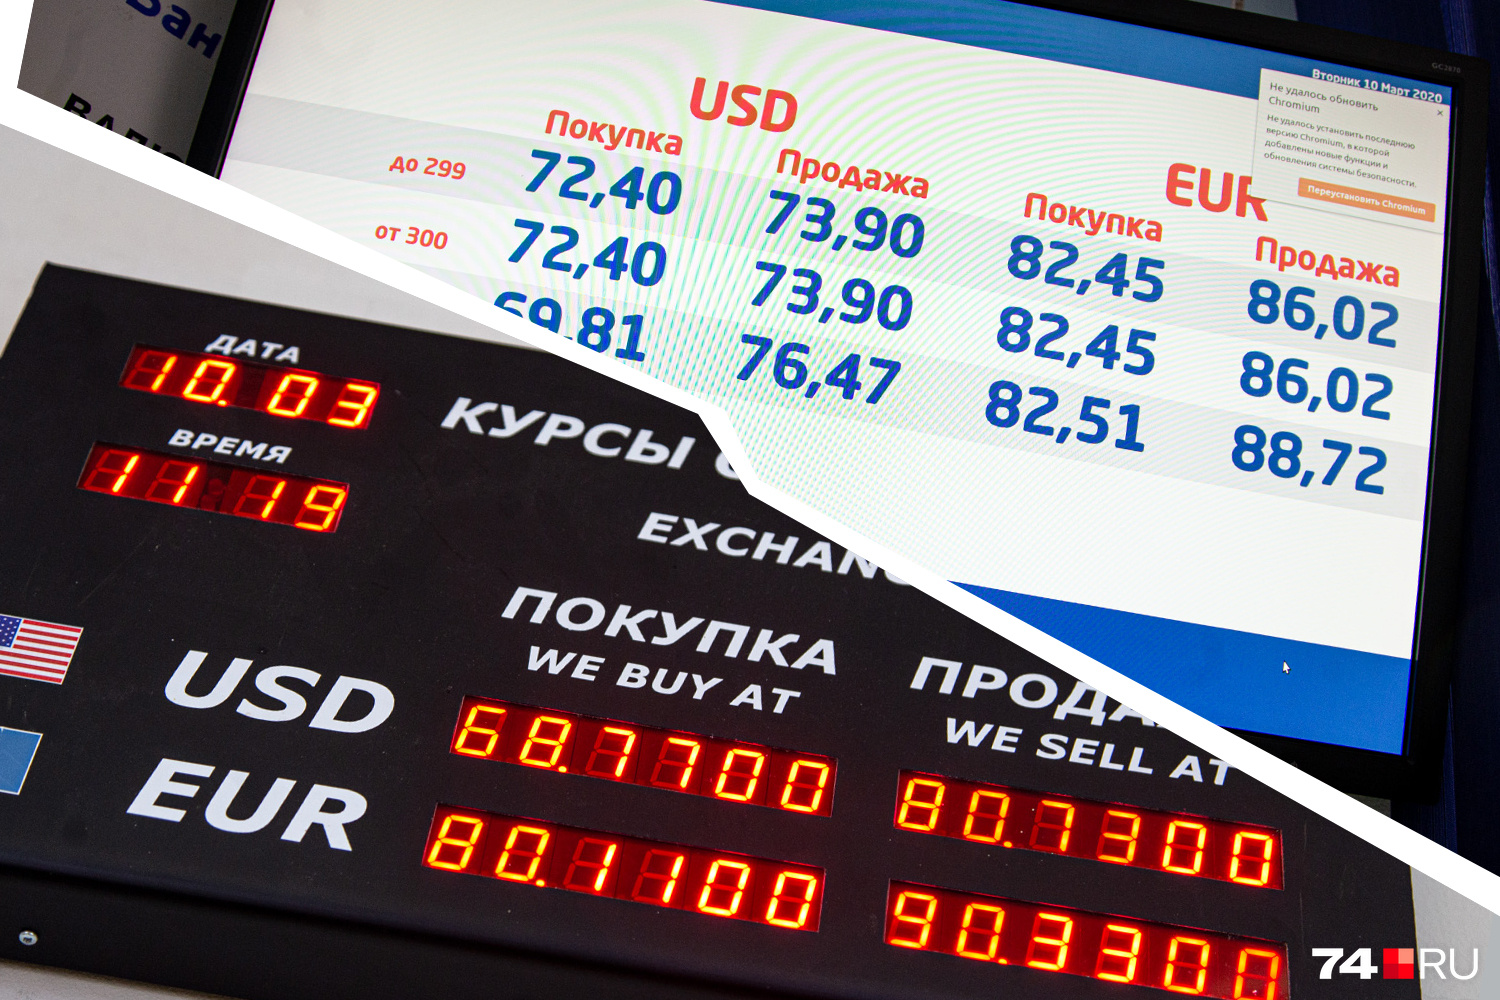 Курсы валют. Валютный курс. Курсы валют в рублях. Котировки курсов валют.